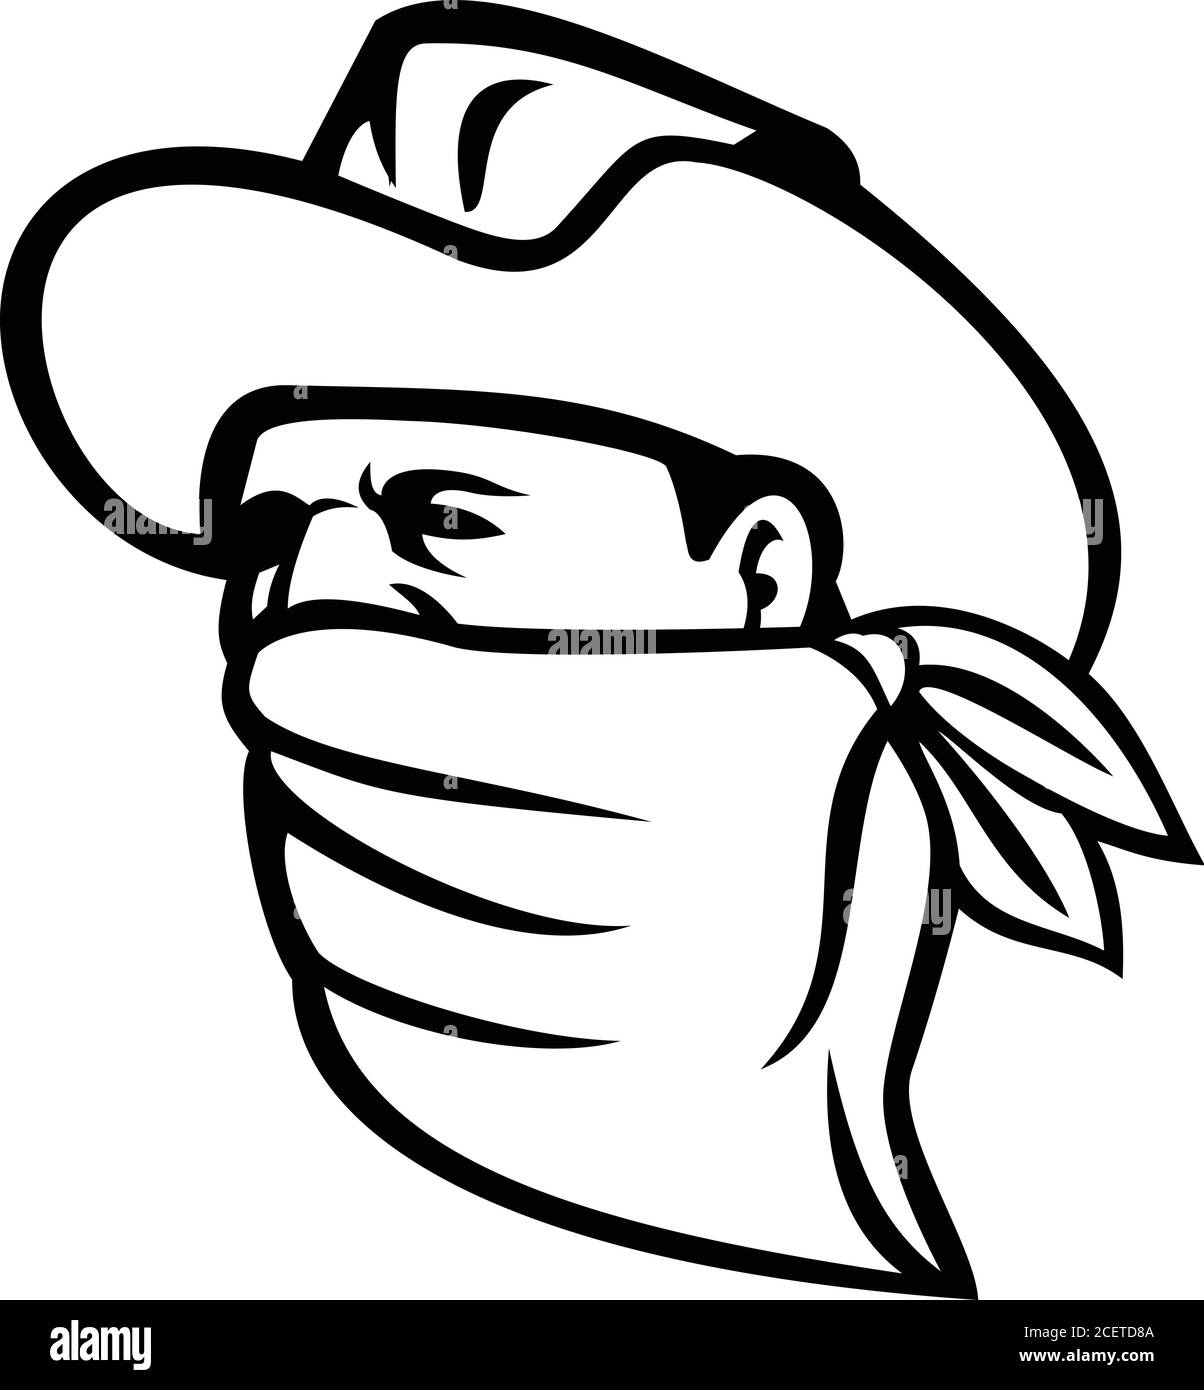 Mascot illustrazione di un cowboy bandito, fuorilegge, highwayman, maverick o ladro che indossa una maschera facciale, copertura viso o bandana guardando a lato su isolat Illustrazione Vettoriale